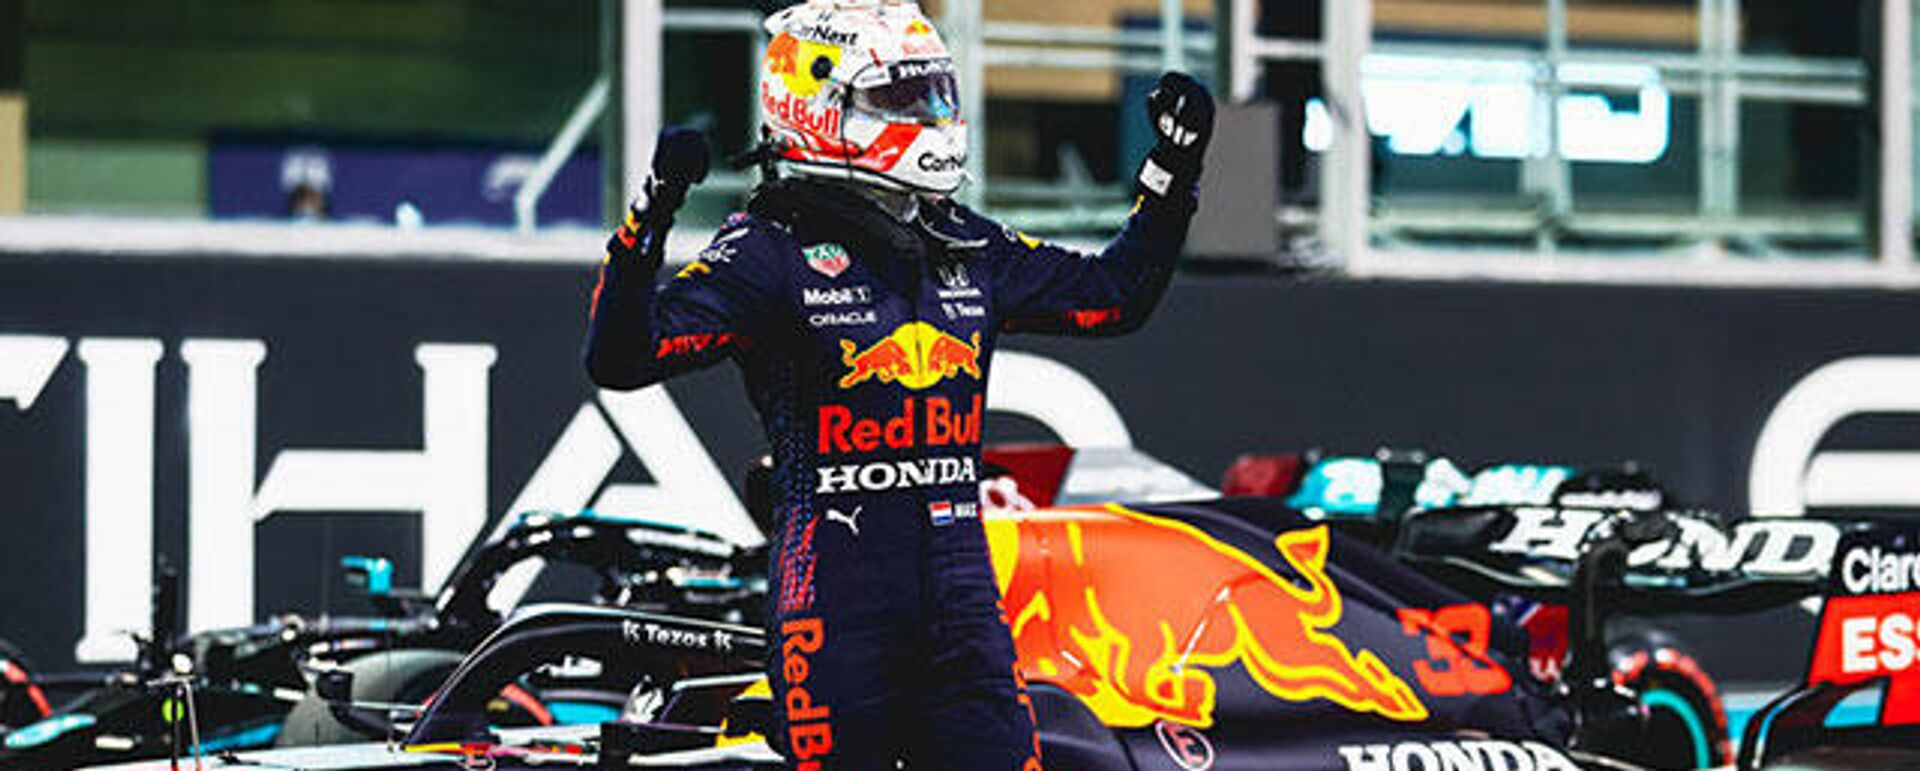 Formula 1'de Red Bull-Honda takımından Max Verstappen şampiyon oldu - Sputnik Türkiye, 1920, 13.12.2021